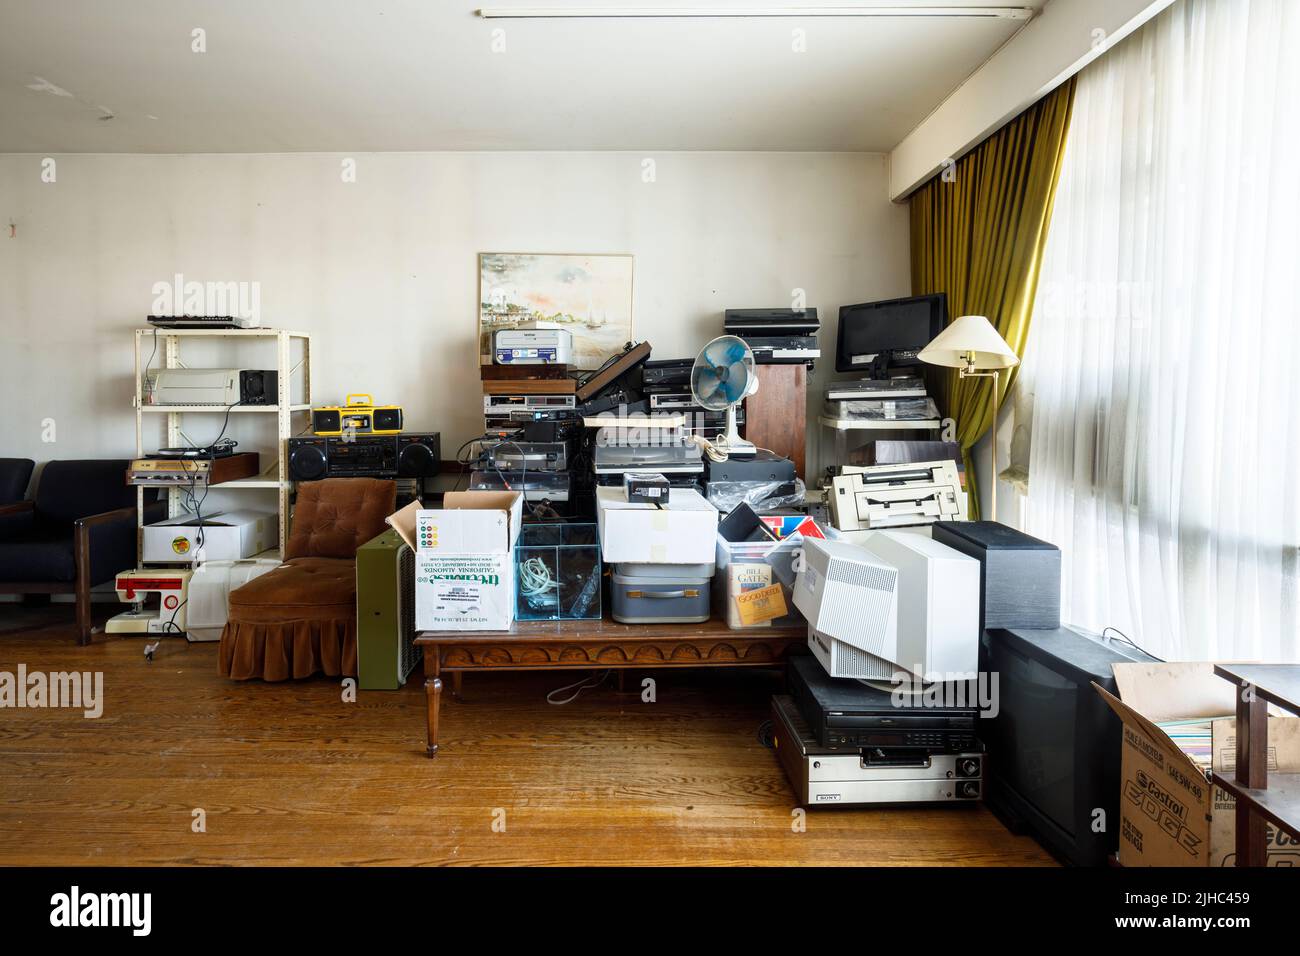 Un desorden de electrónica vieja en una sala de estar. Foto de stock